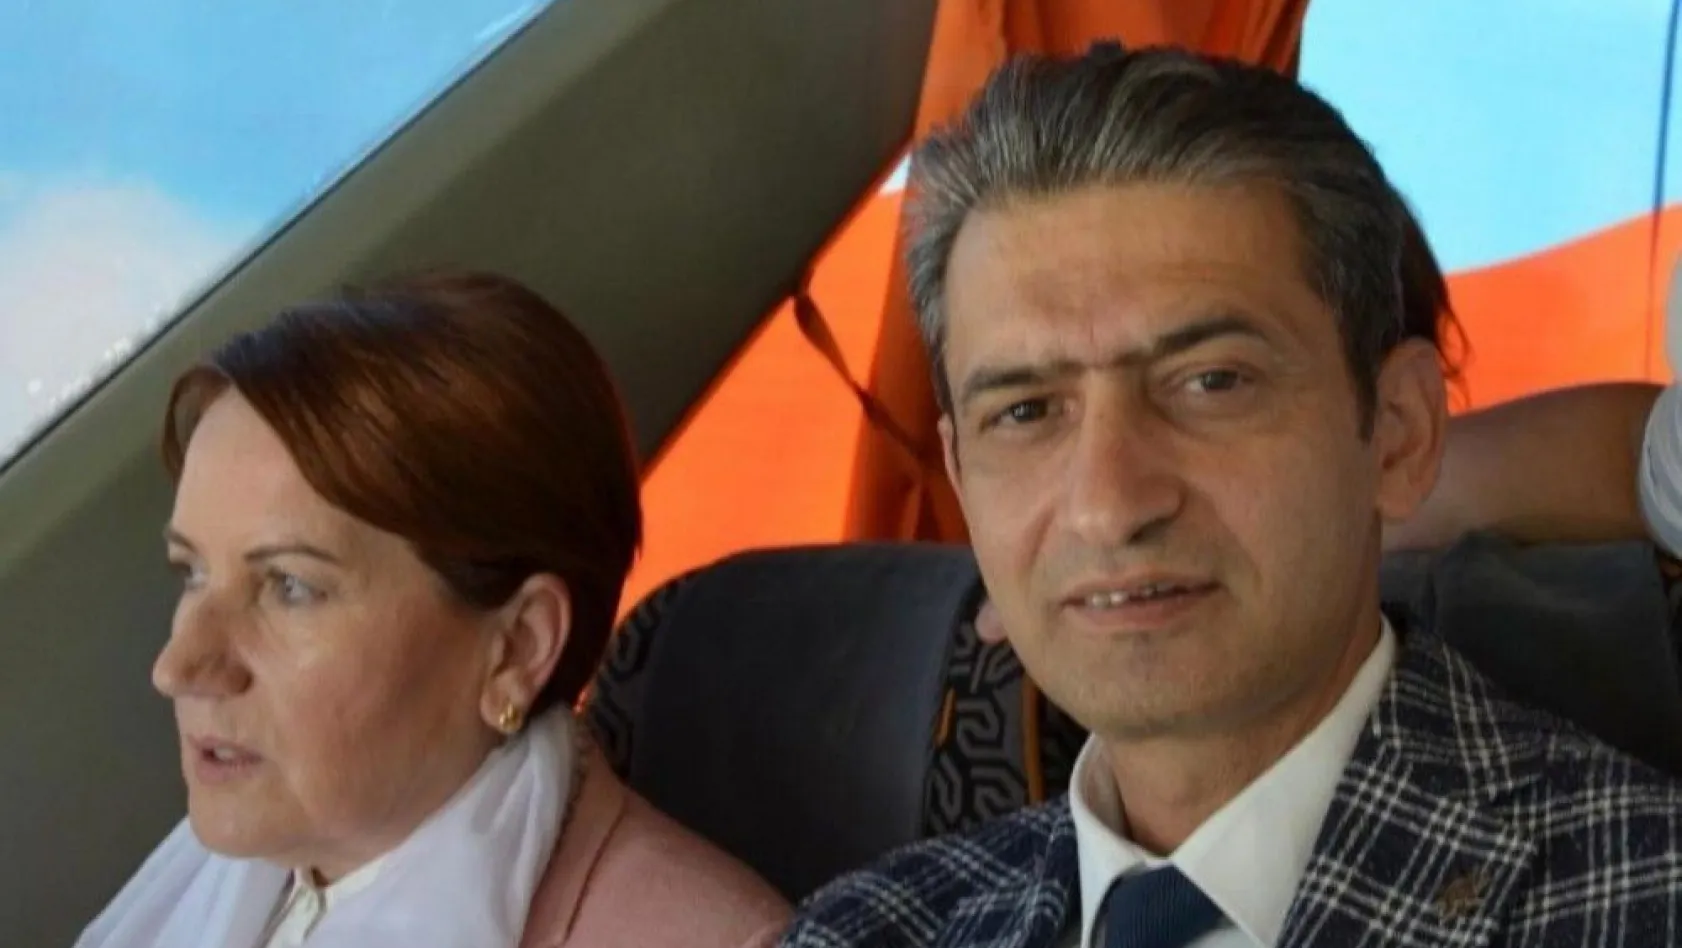 İYİ Parti Malatya İl Başkanına saldırı
